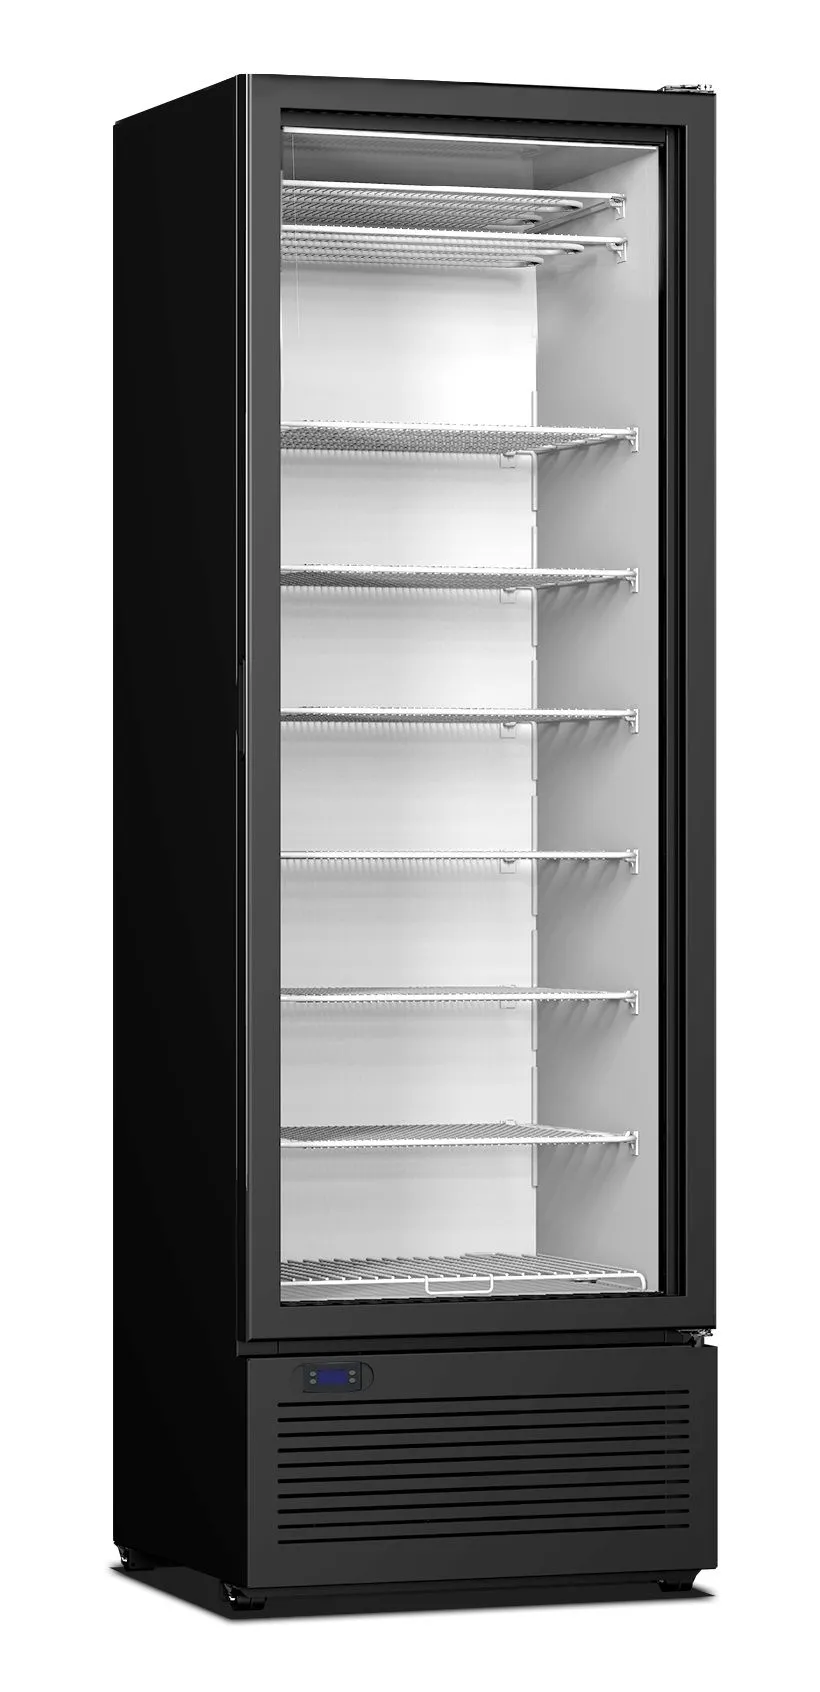 CombiSteel Ice Cream Storage Freezer With Full Glass Door 400